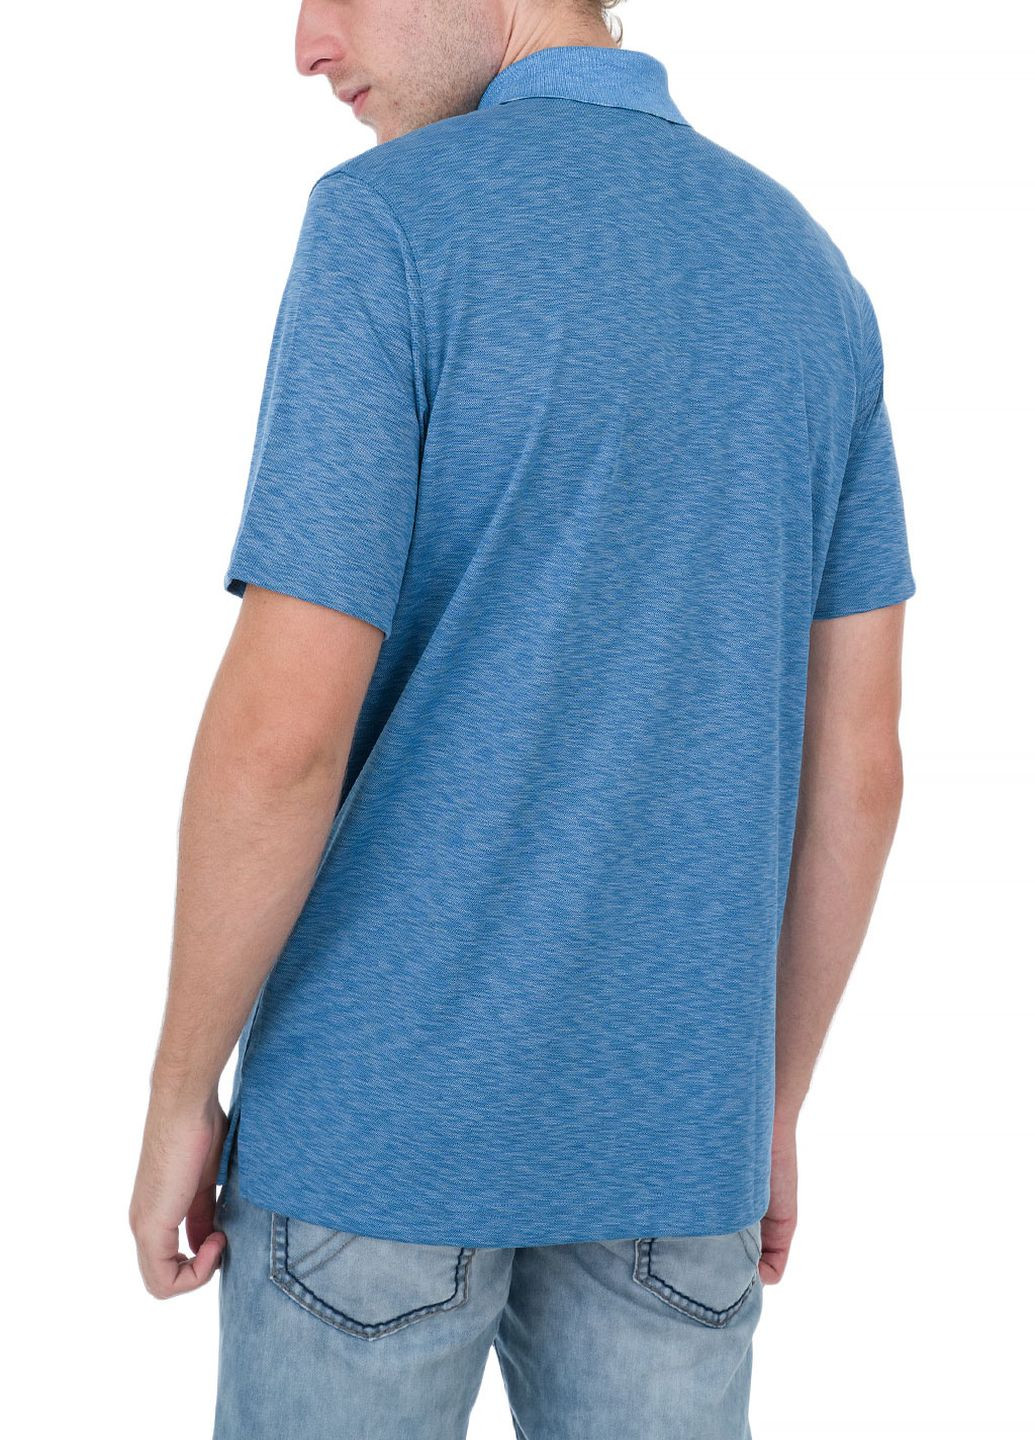 Синяя футболка-поло для мужчин Ragman в полоску